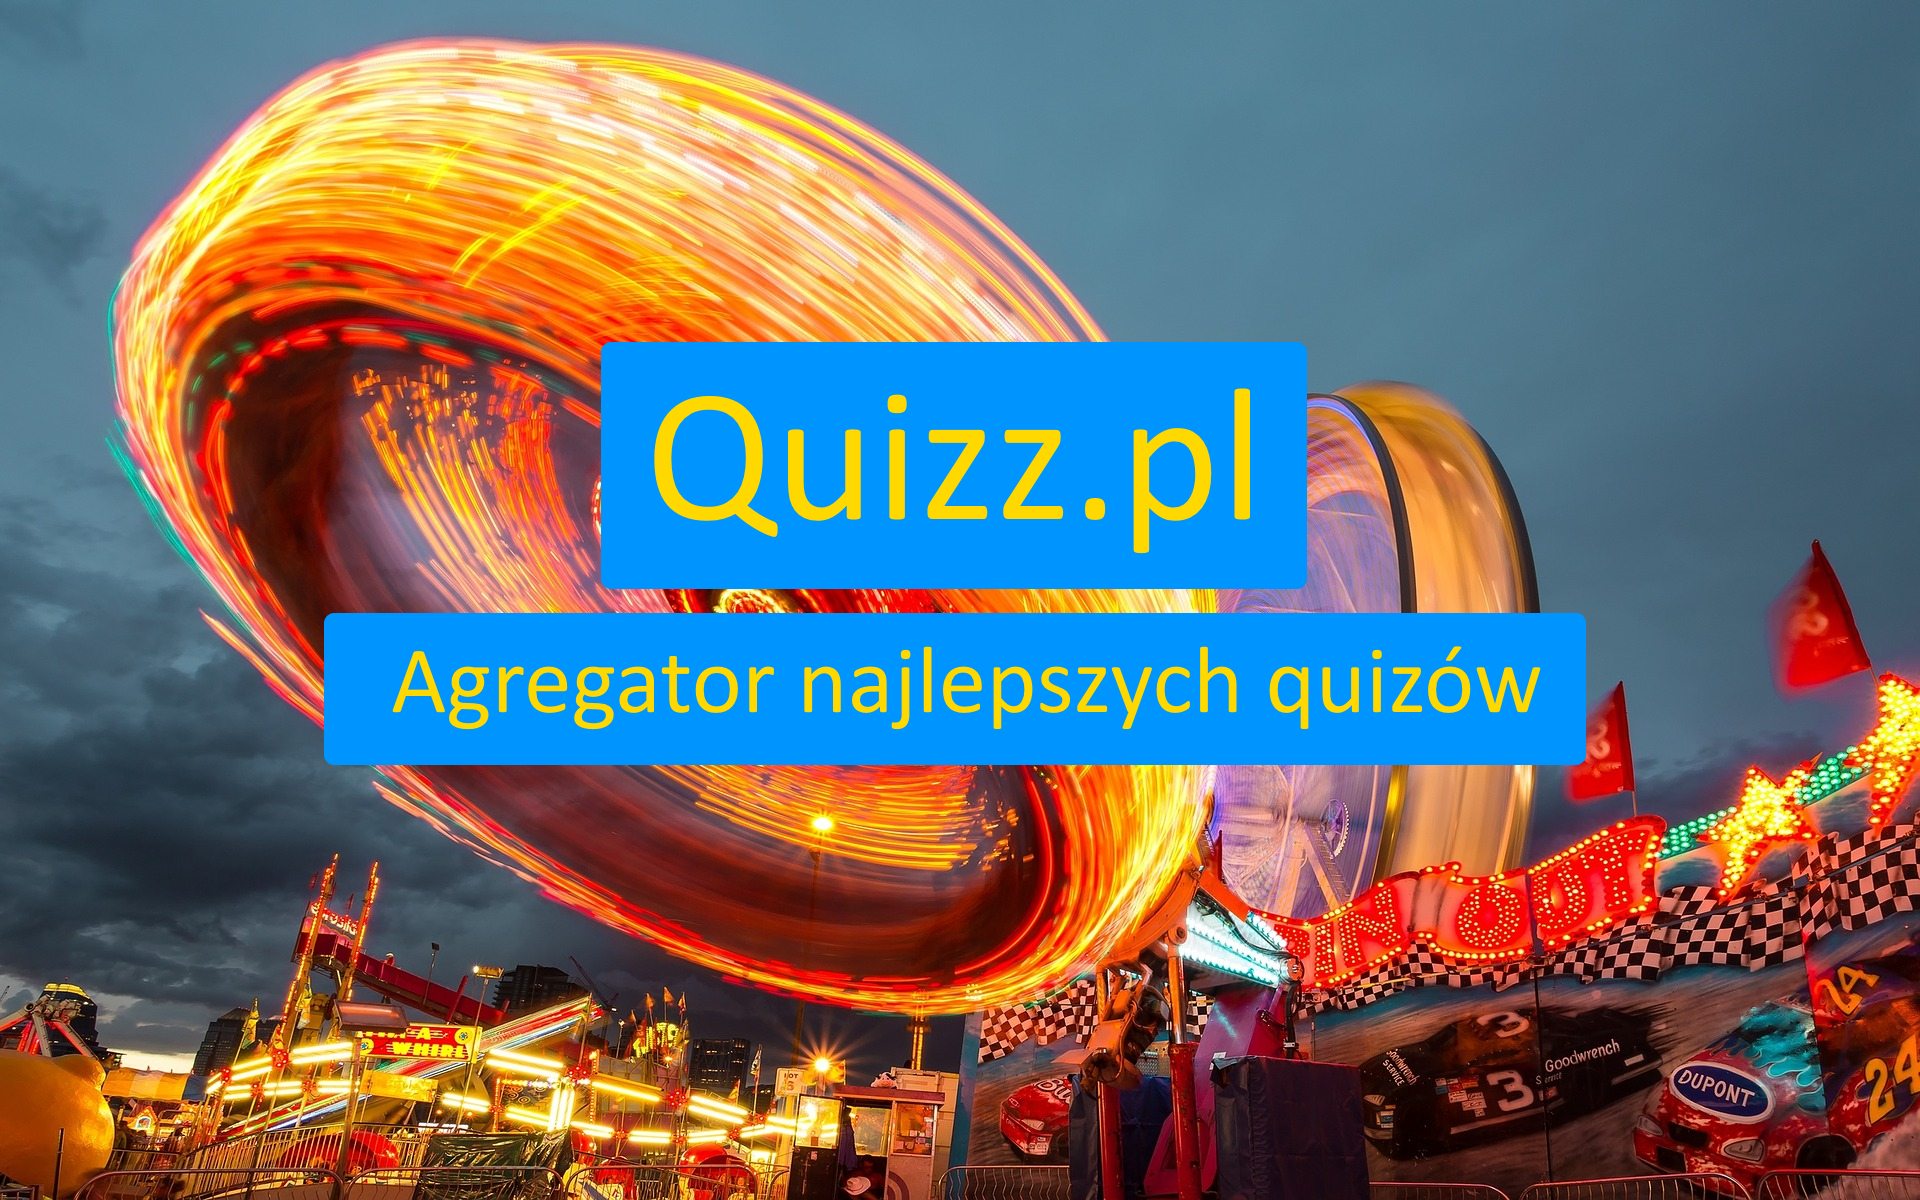 Gorące i bezpłatne quizy, testy wiedzy i sprawdziany - strona 2 - www.quizz.pl